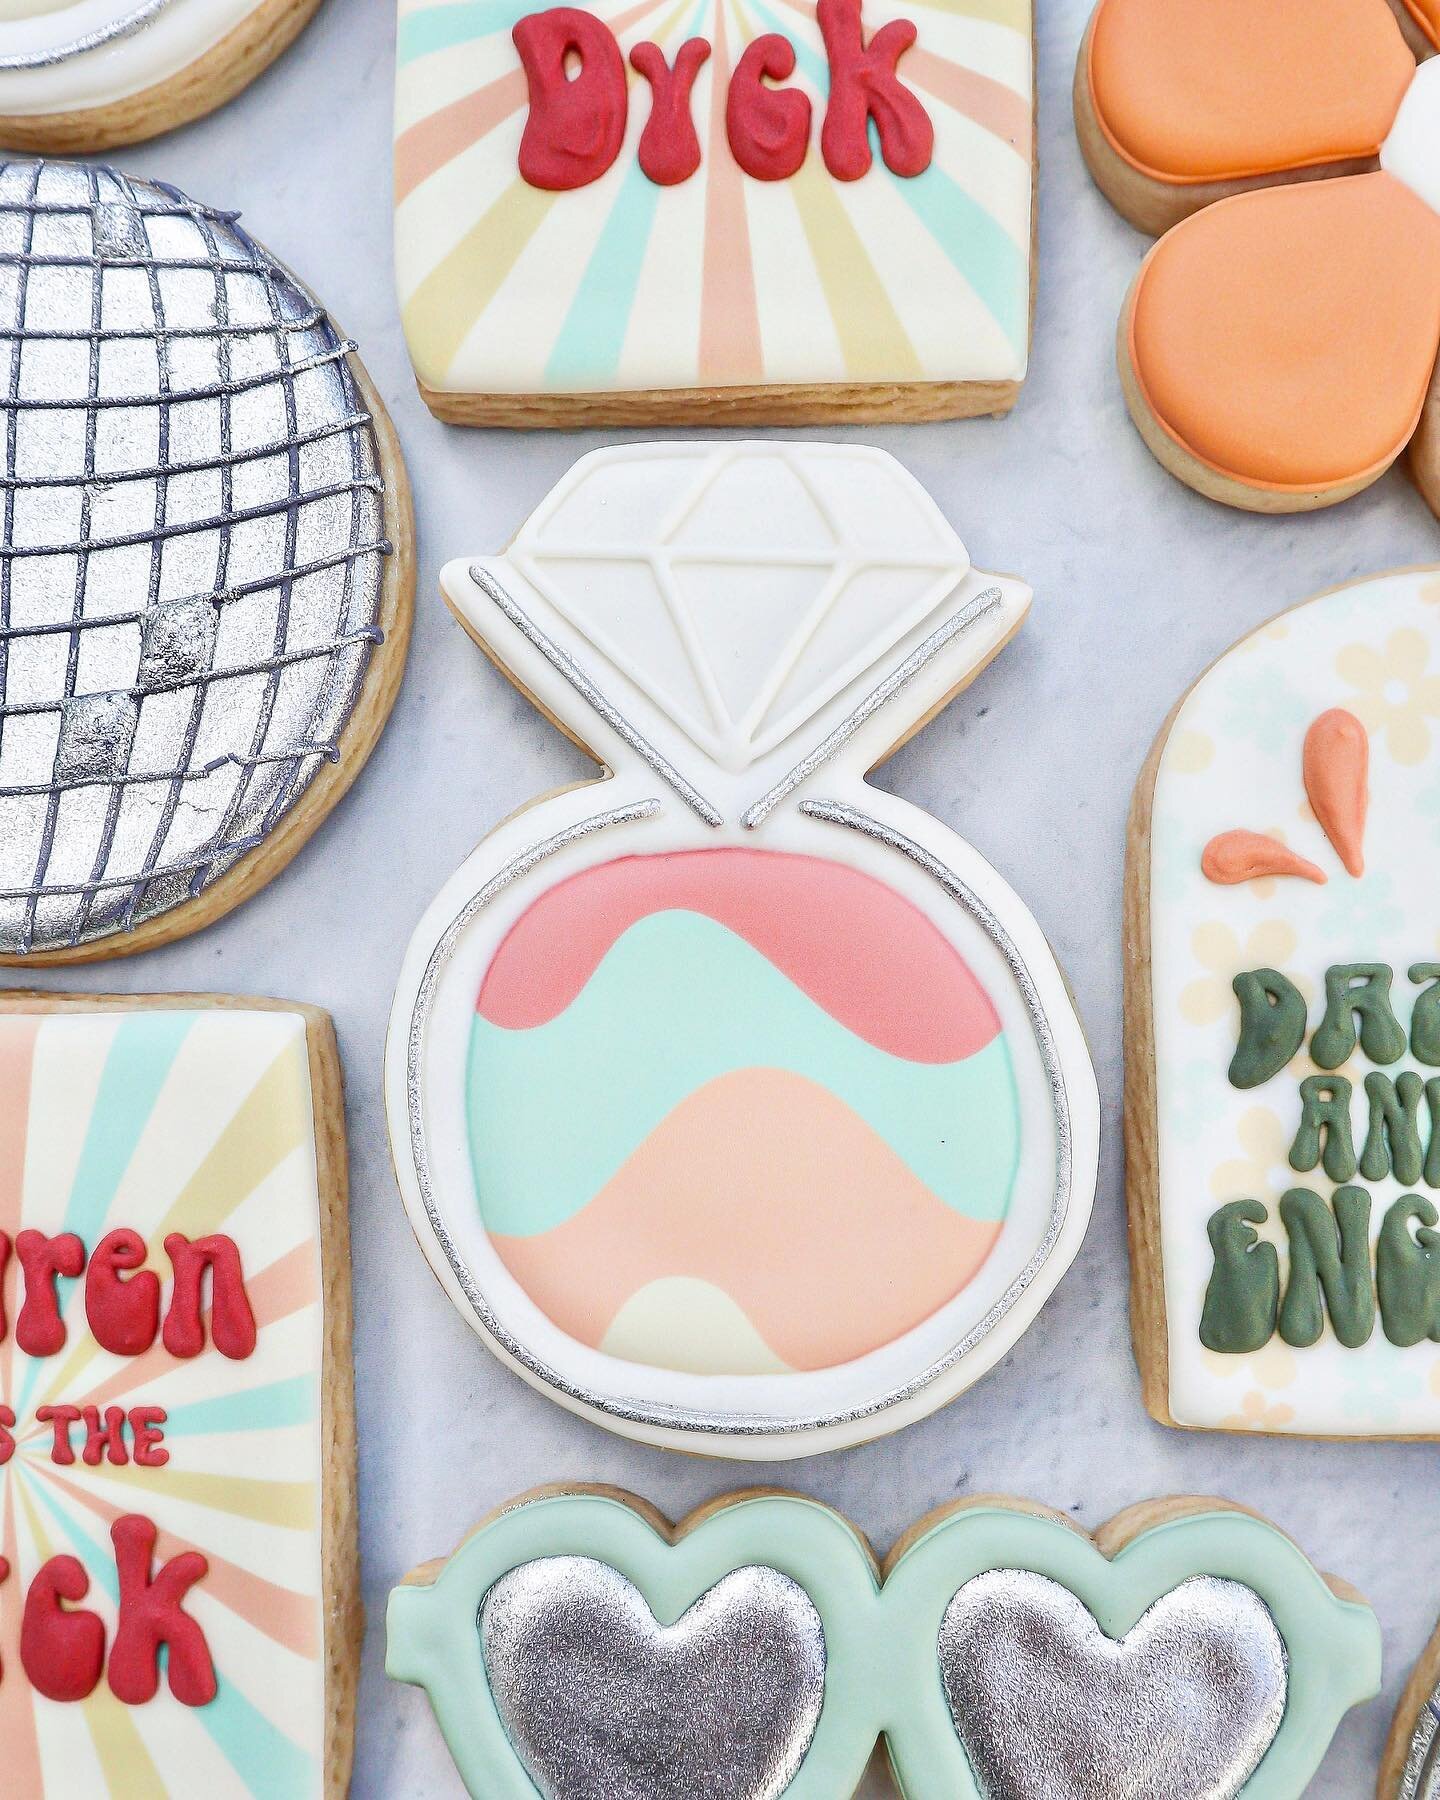 Dazed &amp; engaged 💍🪩

#discocookies #groovycookies #bachelorettecookies #bachelorette #discoball #engagement #decoratedcookies #yxecookies #saskatooncookies